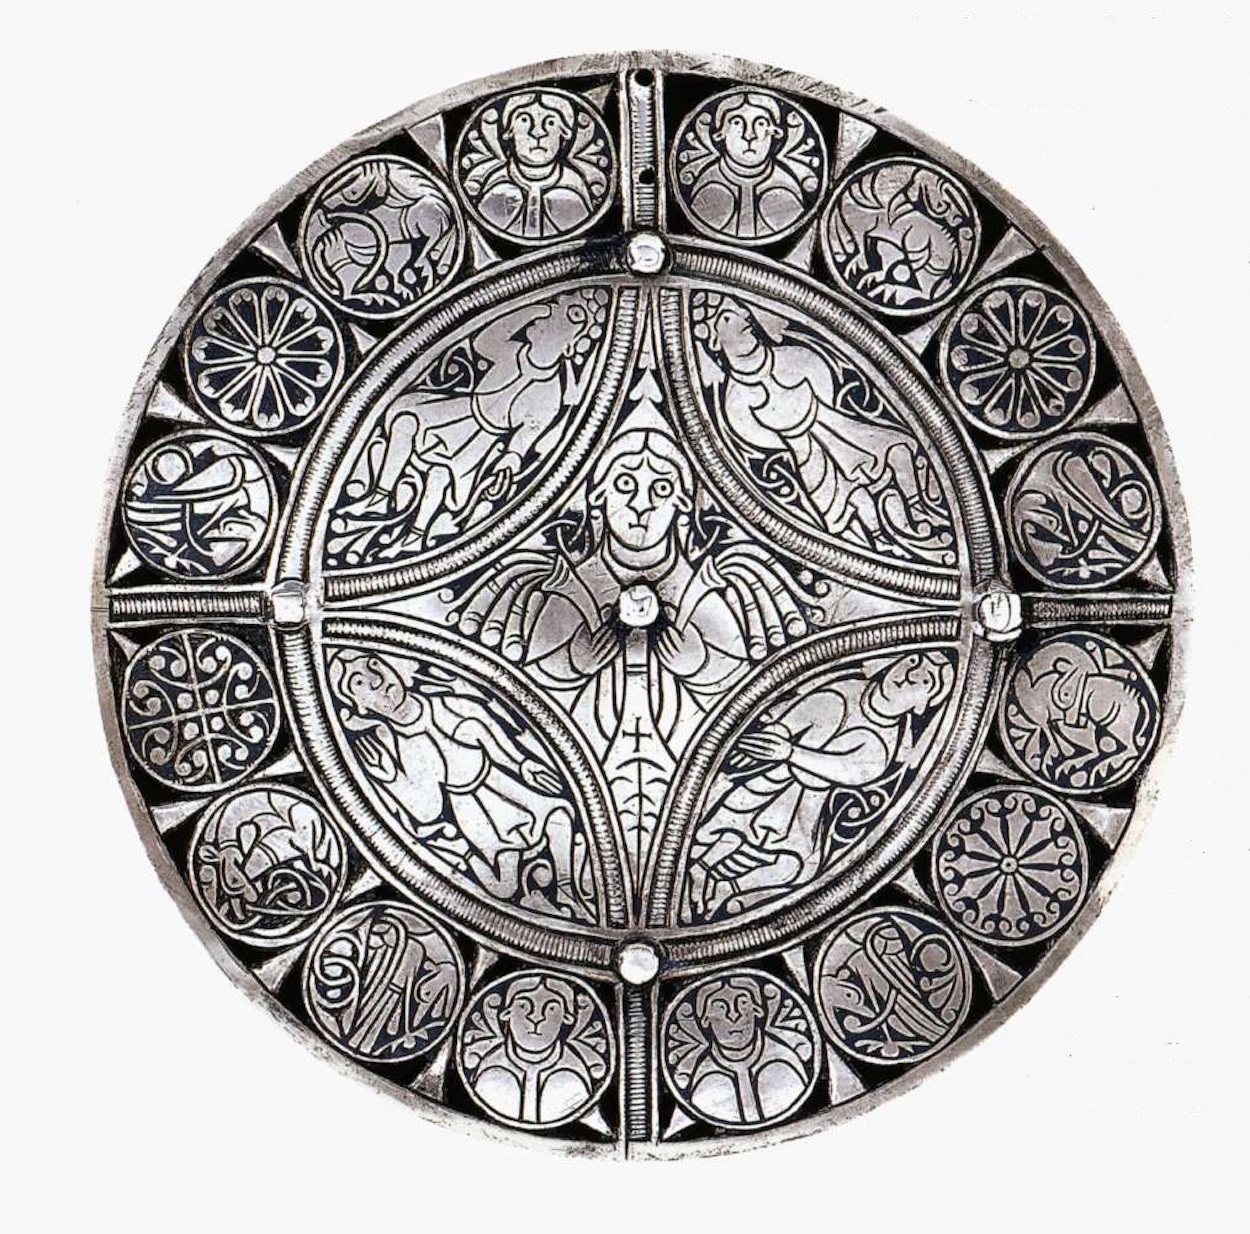 “Fullerova brož” by Unknown Artist - konec 9. století - 114 mm (průměr) 